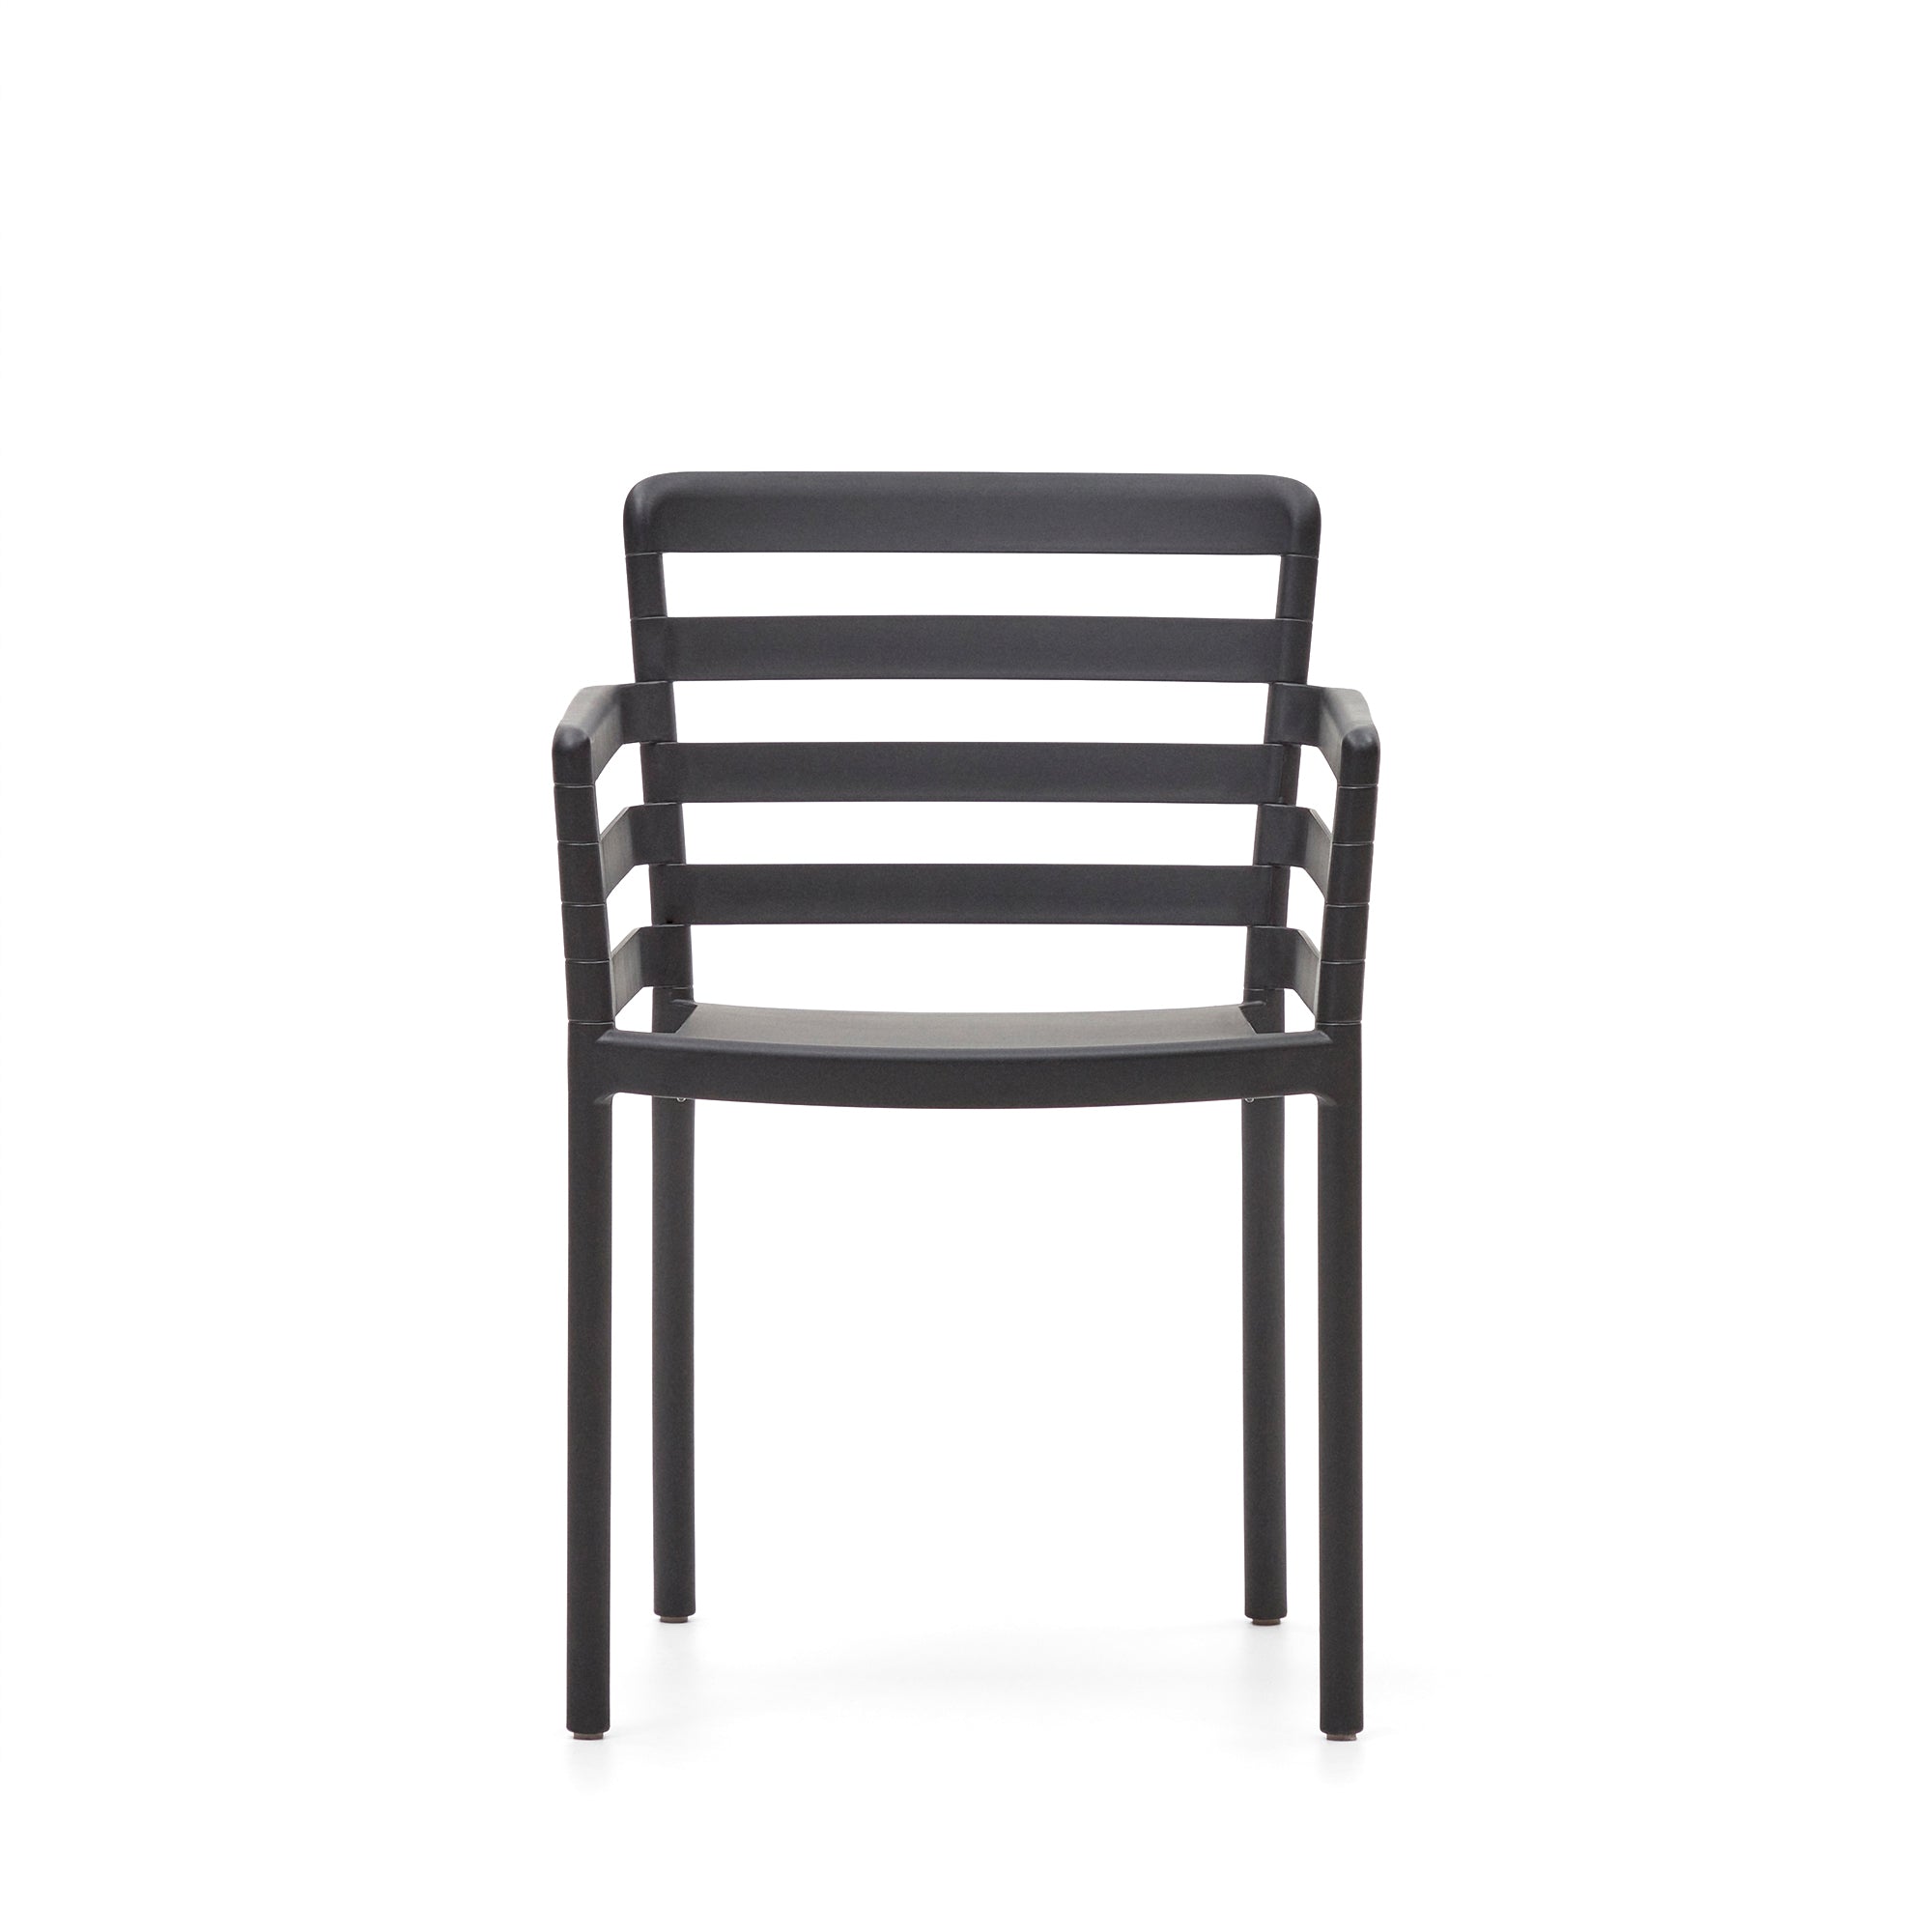 Nariet egymásba rakható kültéri szék fekete színben